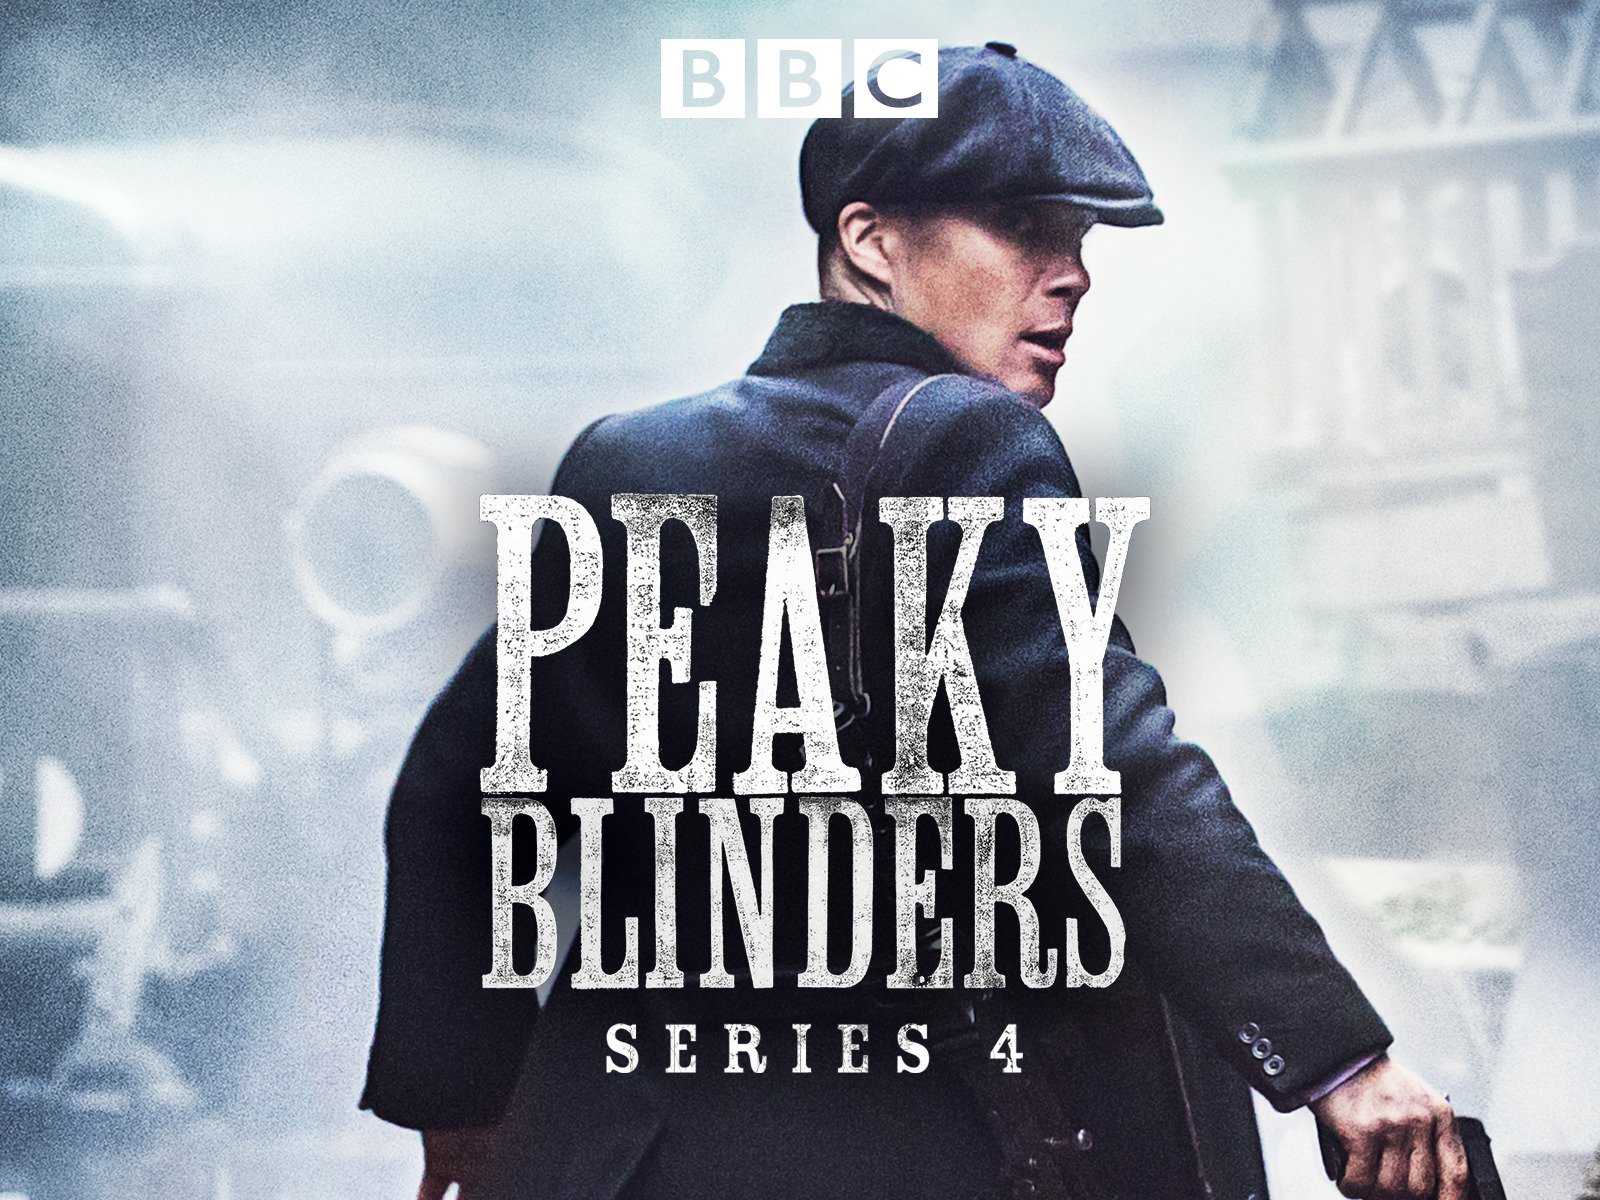 peaky blinders season 4 episode 1